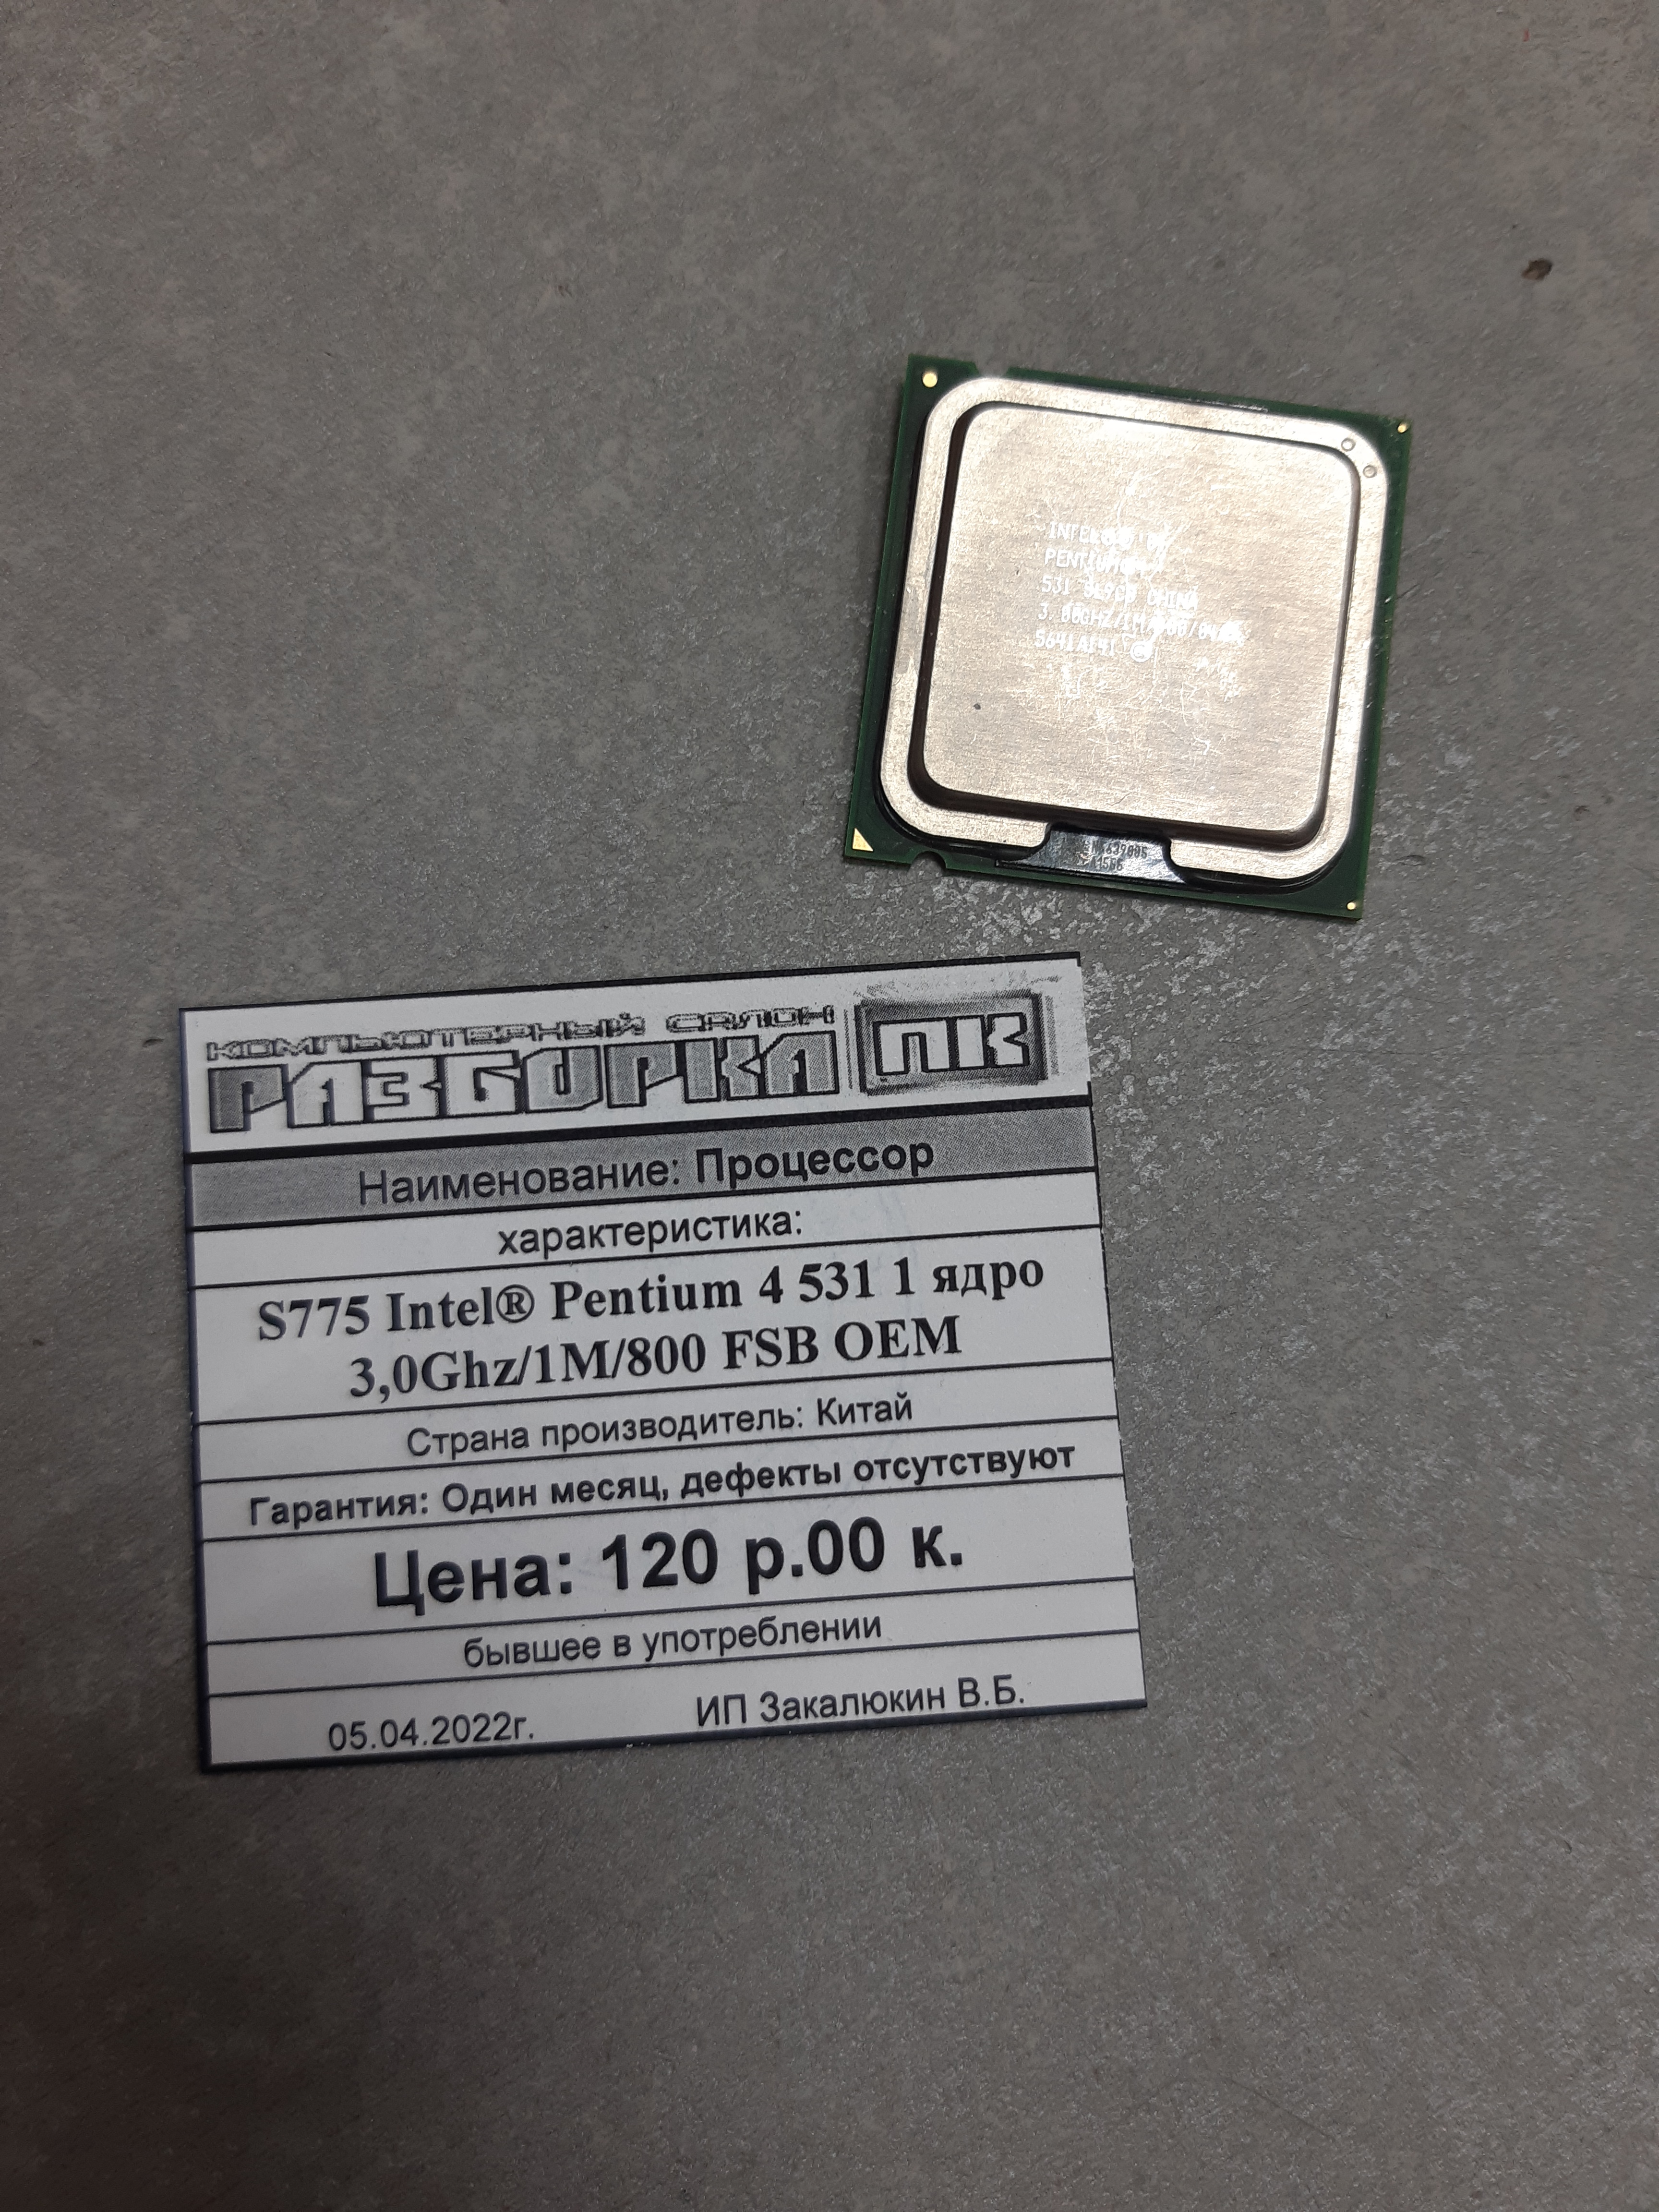 Процессор S775 Intel® Pentium 4 531 1 ядро 3,0Ghz/1M/800 FSB OEM